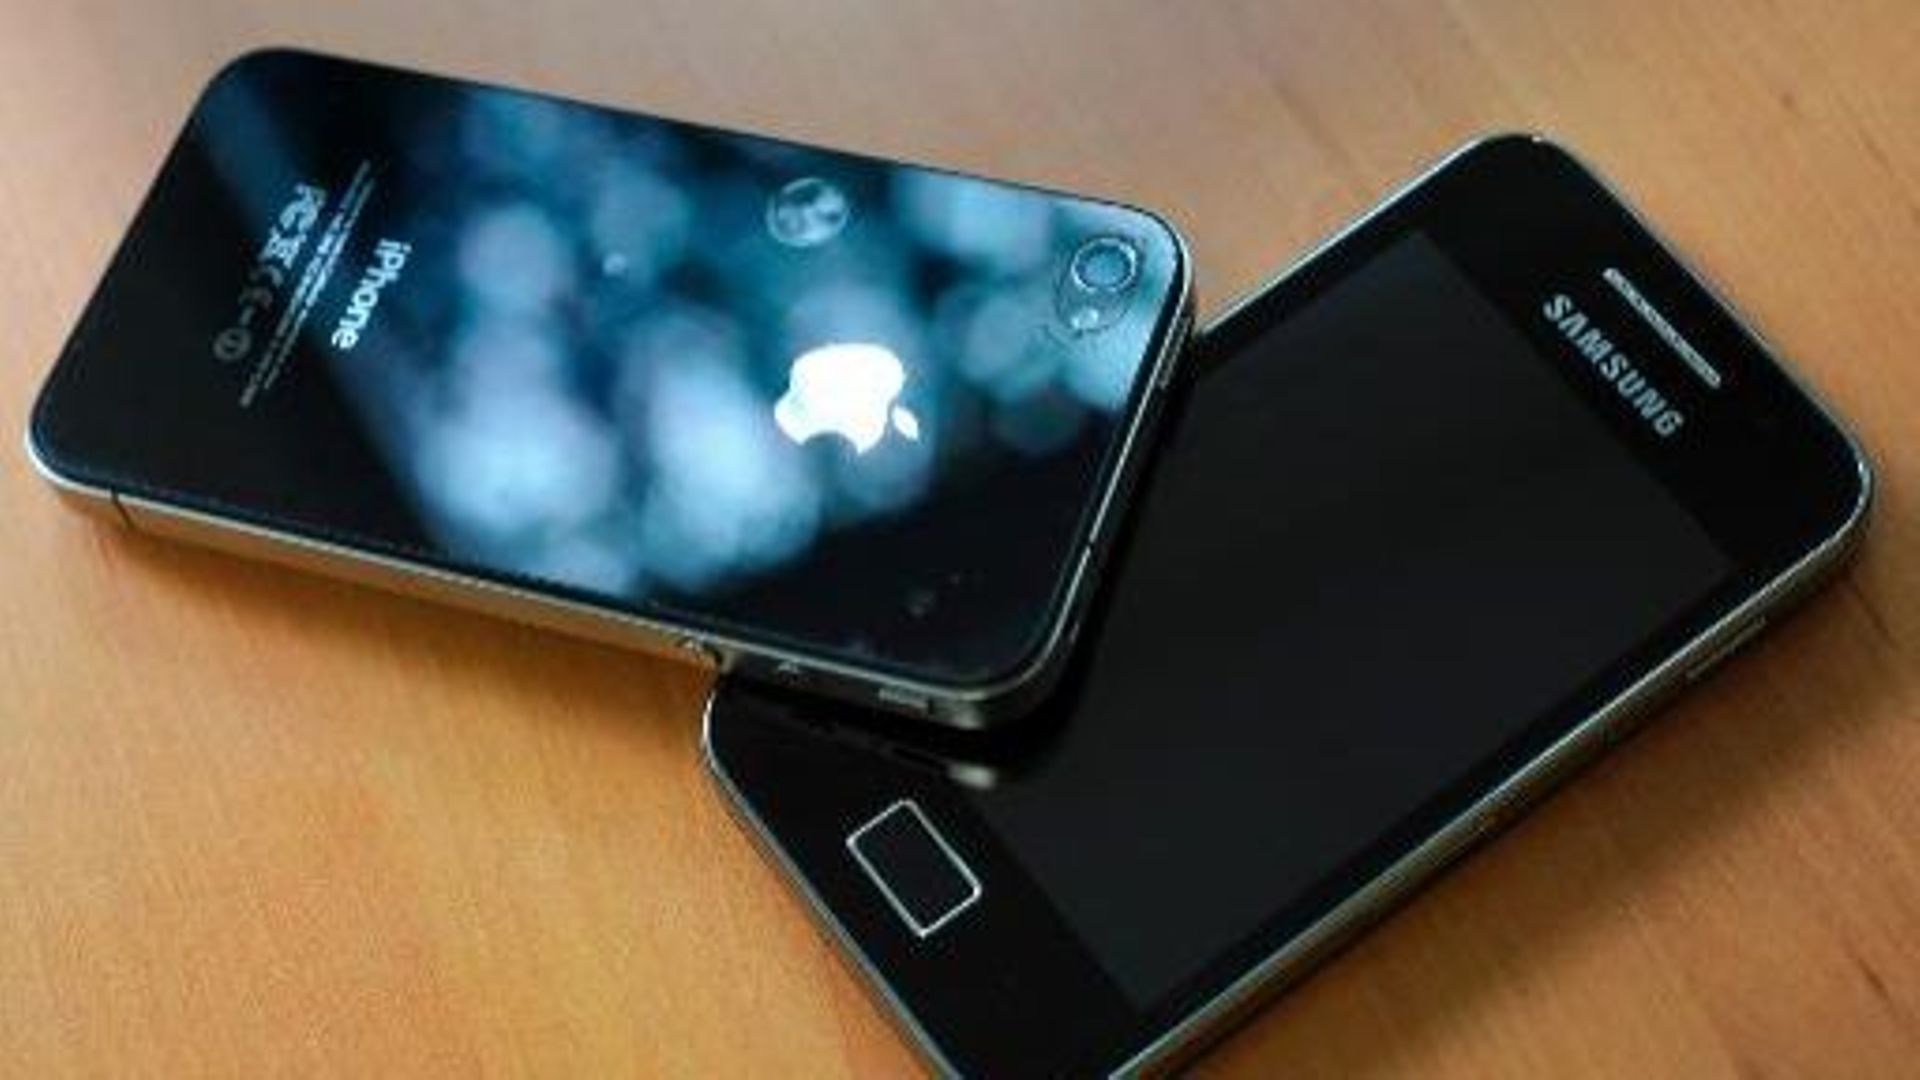 Etats-Unis: Apple obtient l'interdiction de vente d'appareils Samsung